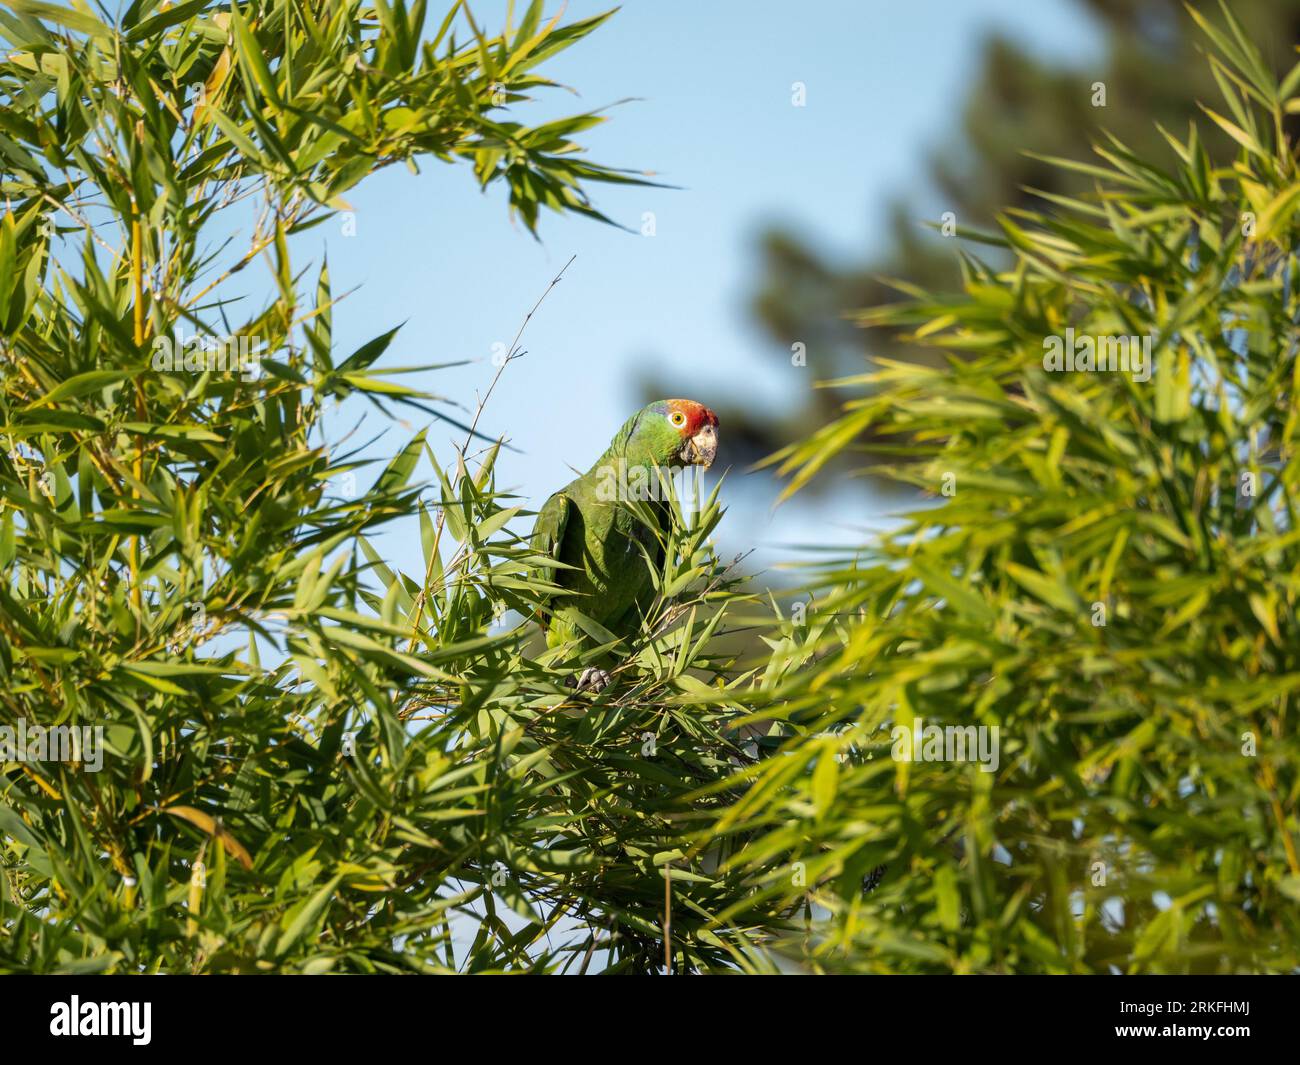 Un vivace pappagallo amazzonico dalle guance verdi arroccato in cima a un ramo di albero adornato da una lussureggiante vegetazione Foto Stock